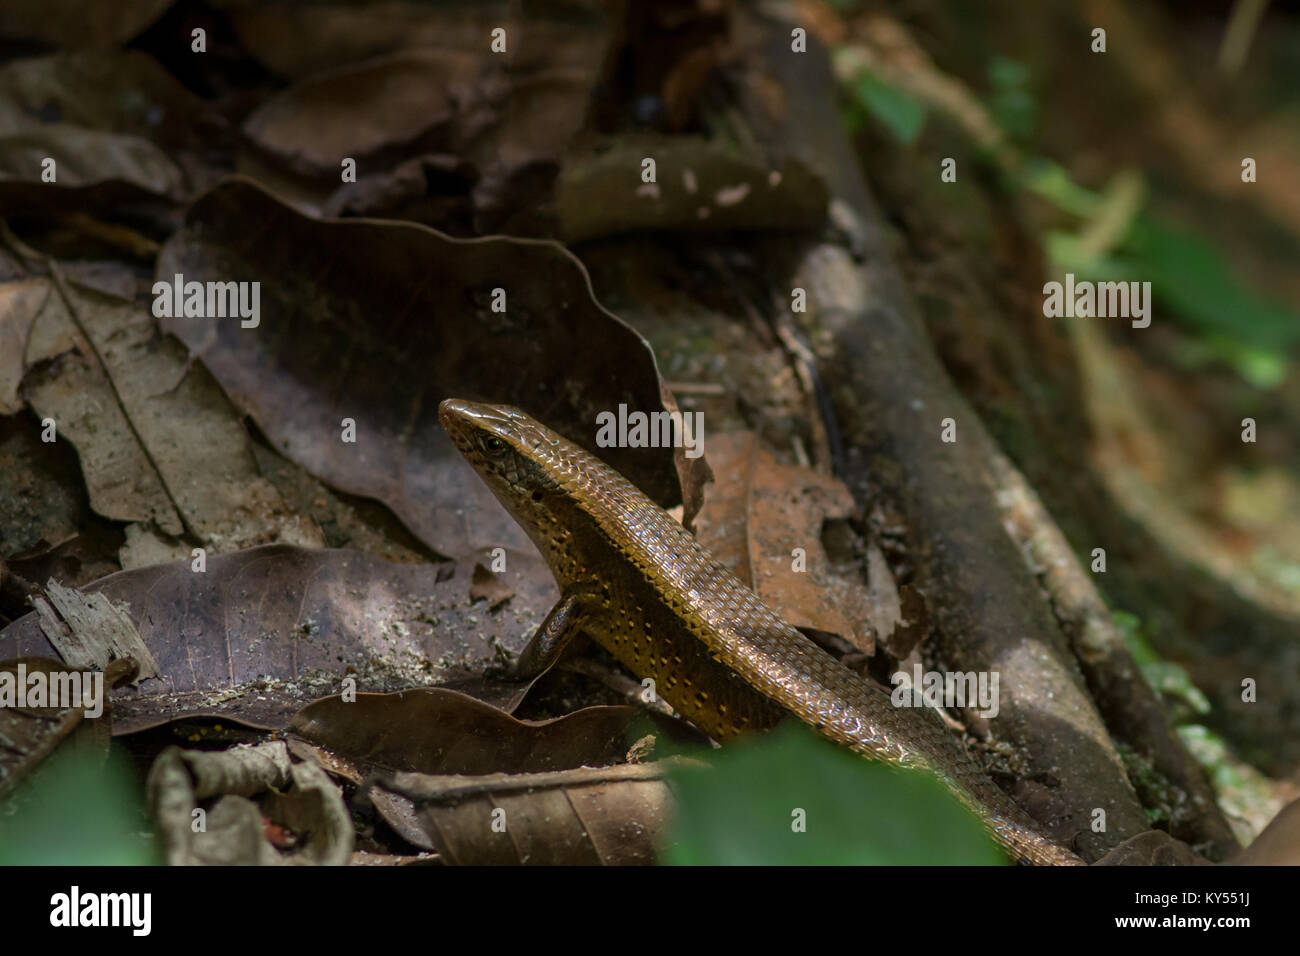 Close up de la partie supérieure du corps et la tête d'un Skink Lizard sur le sol de la forêt la marche sur des feuilles mortes et des racines des arbres. Banque D'Images